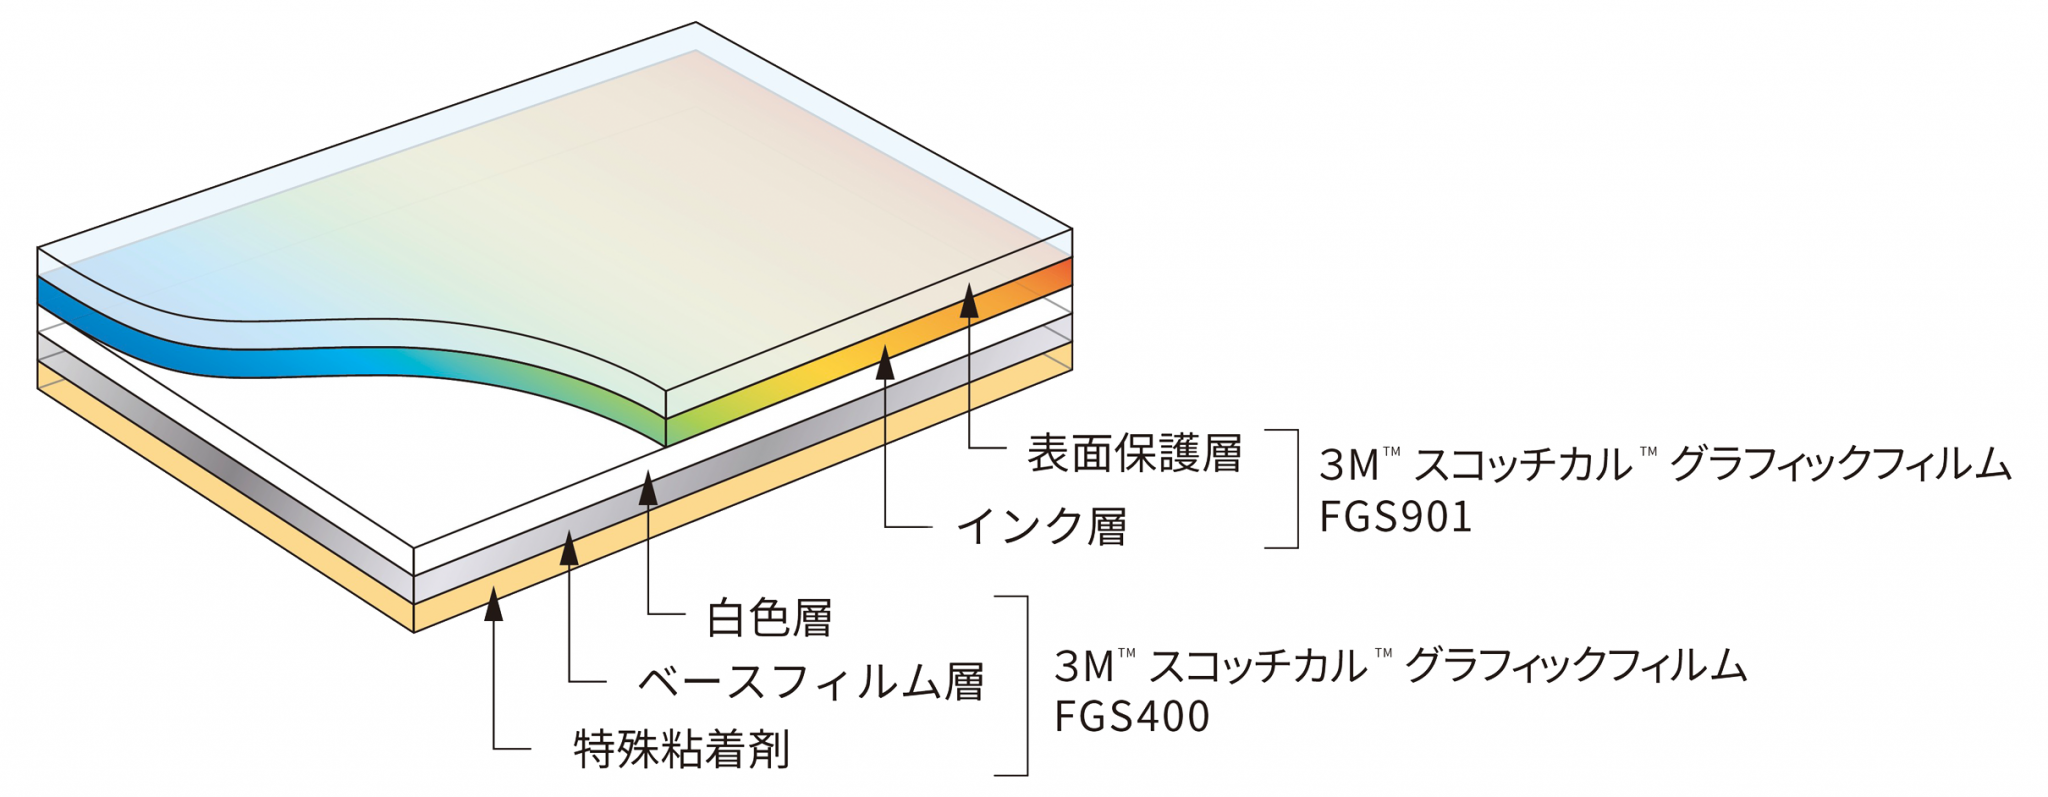 本製品は、３Ｍ™ スコッチカル™ グラフィックフィルム FGS901に逆像印刷するタイプです。